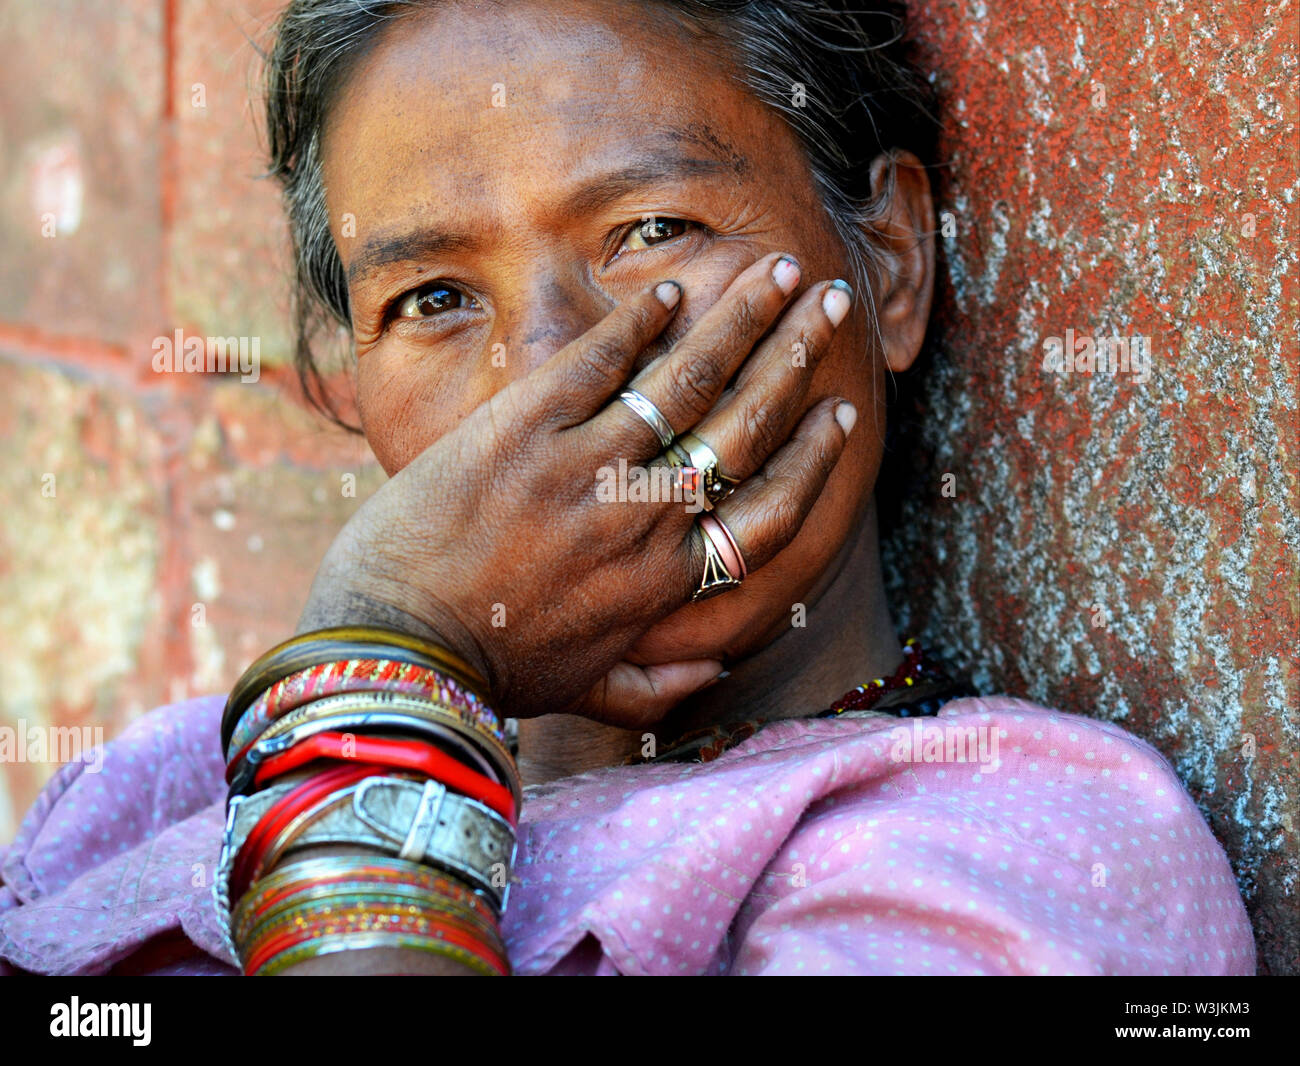 Il nepalese donna con tutto conosce gli occhi si copre la bocca con la mano sinistra (mentoniera gesto) mostrando così il suo bracciali e anelli. Foto Stock